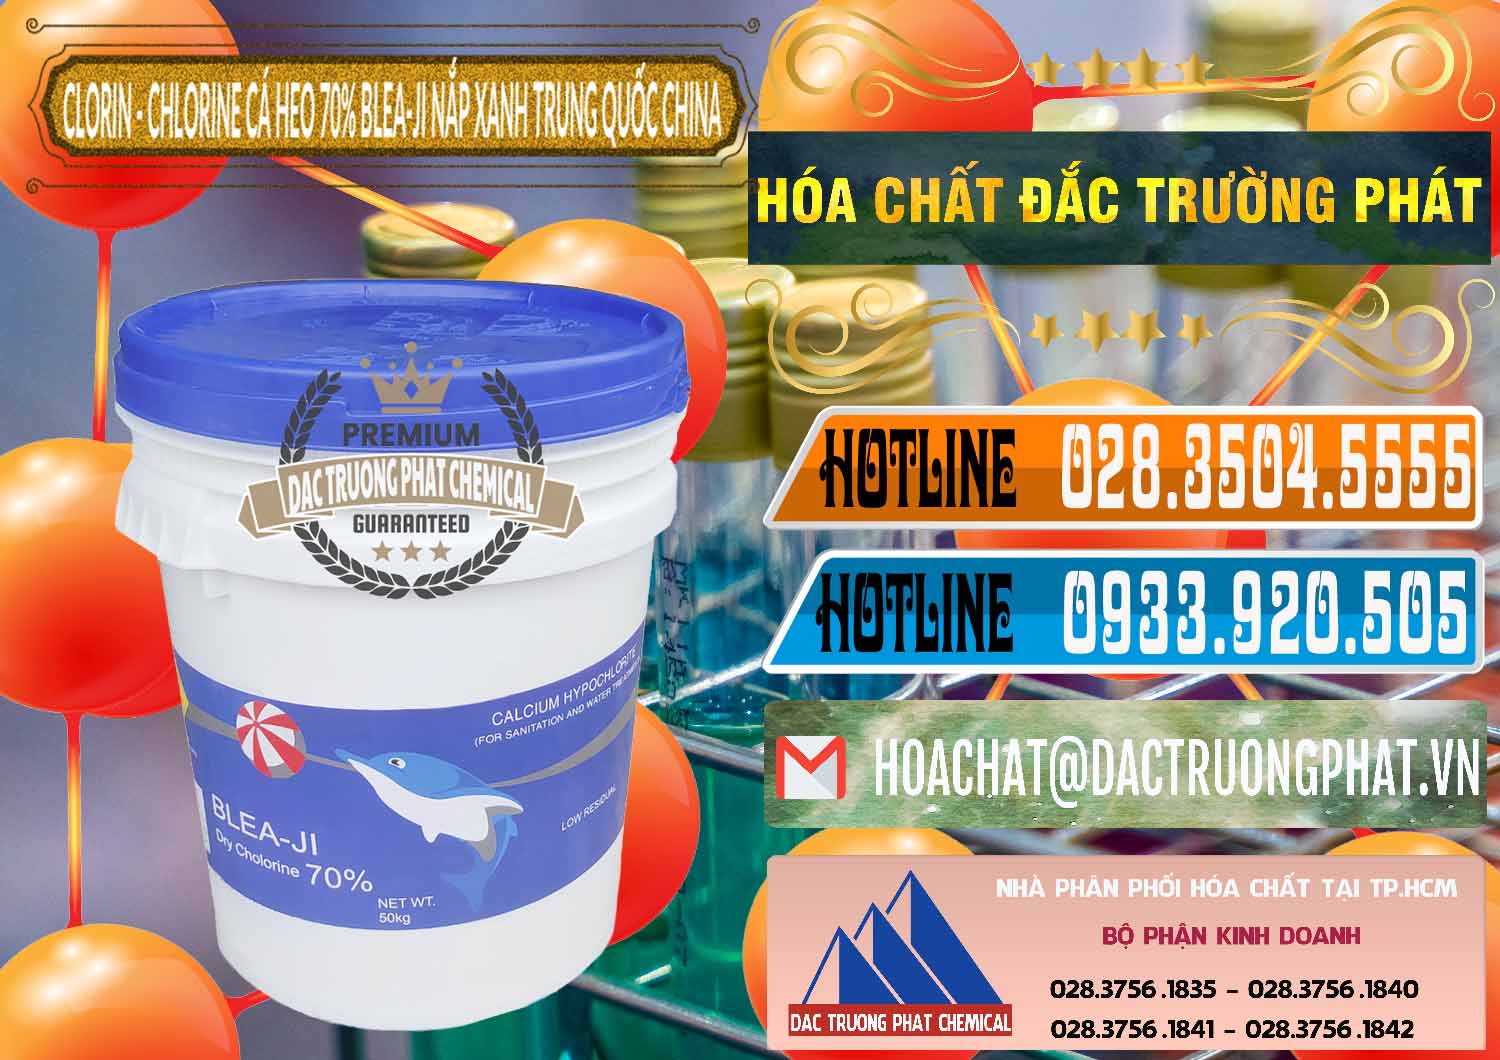 Đơn vị phân phối & bán Clorin - Chlorine Cá Heo 70% Cá Heo Blea-Ji Thùng Tròn Nắp Xanh Trung Quốc China - 0208 - Nơi chuyên cung cấp - kinh doanh hóa chất tại TP.HCM - stmp.net